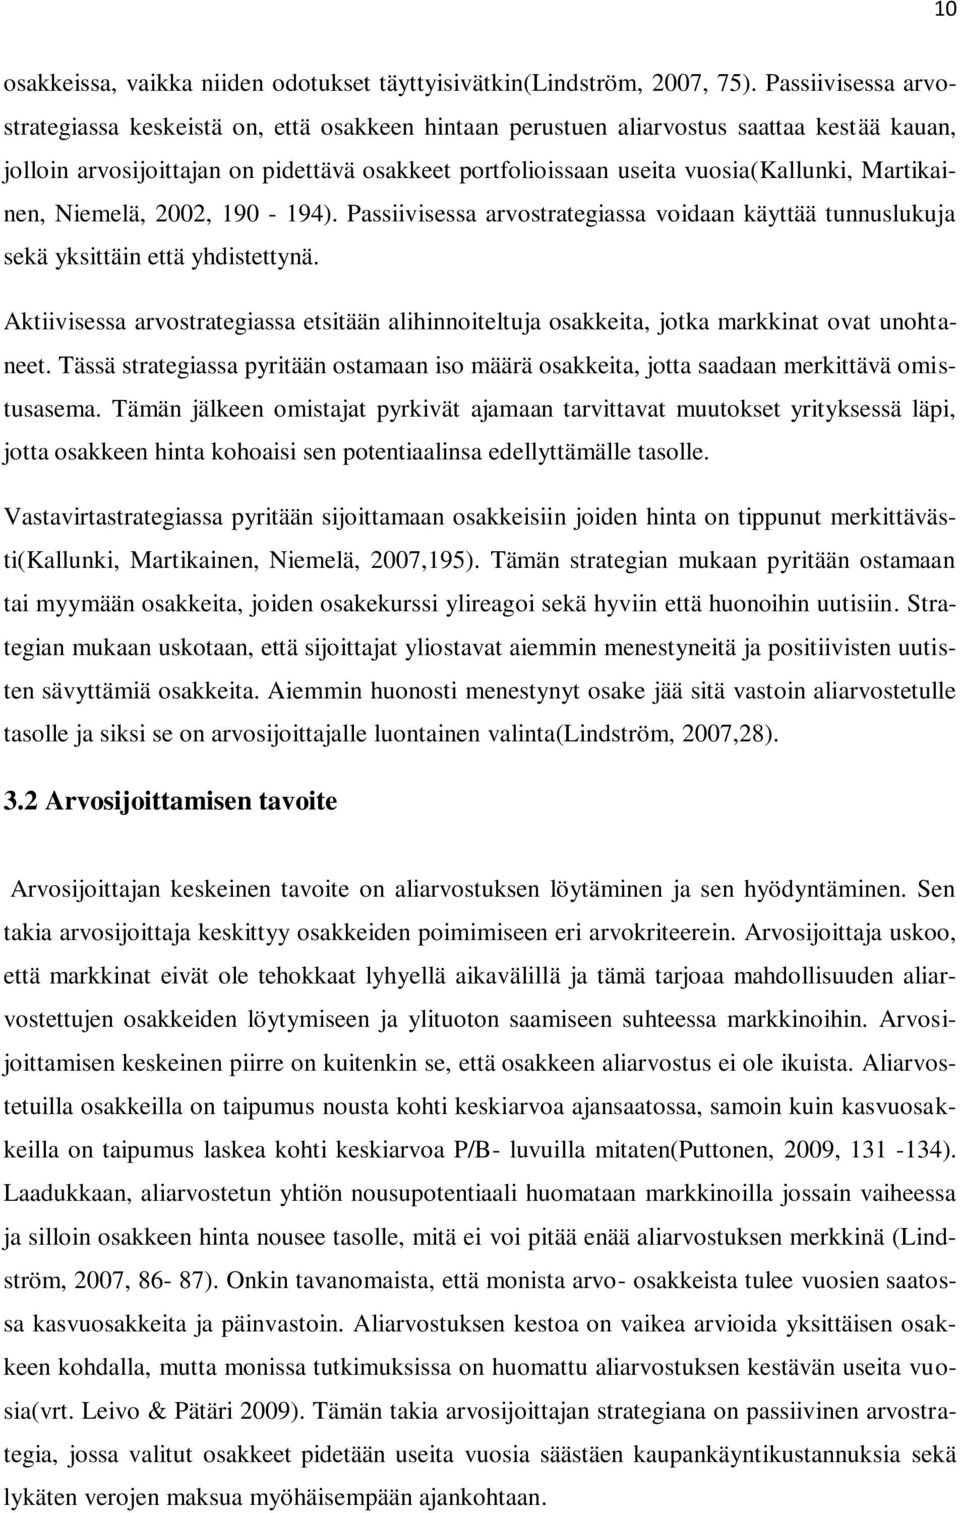 Martikainen, Niemelä, 2002, 190-194). Passiivisessa arvostrategiassa voidaan käyttää tunnuslukuja sekä yksittäin että yhdistettynä.